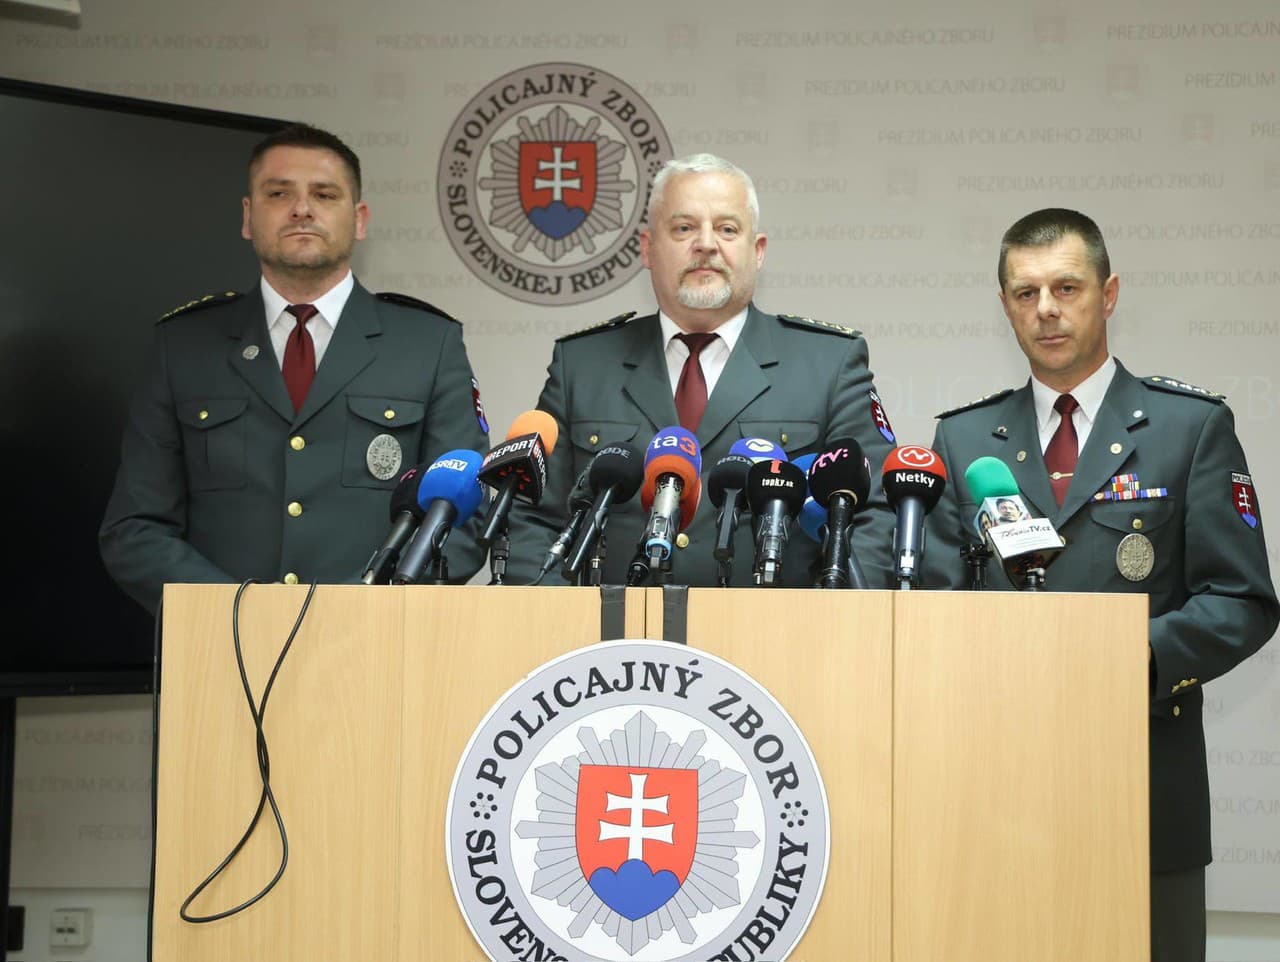 Zľava Ivan Hapšták, Ľubomír Solák a Rastislav Polakovič